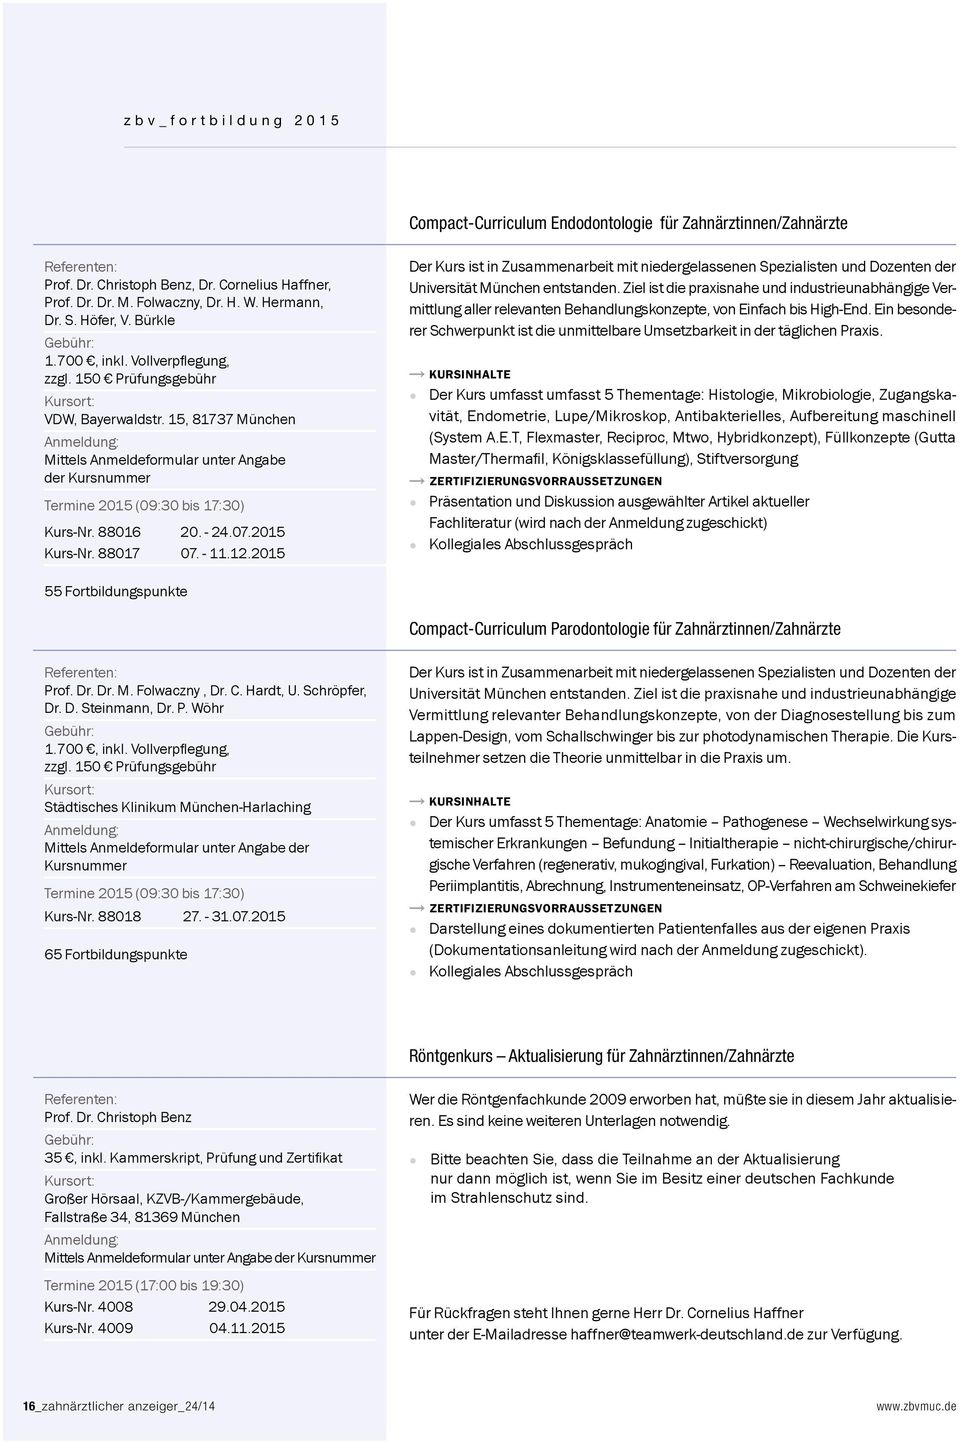 15, 81737 München Anmeldung: Mittels Anmeldeformular unter Angabe der Kursnummer Termine 2015 (09:30 bis 17:30) Kurs-Nr. 88016 20. - 24.07.2015 Kurs-Nr. 88017 07. - 11.12.